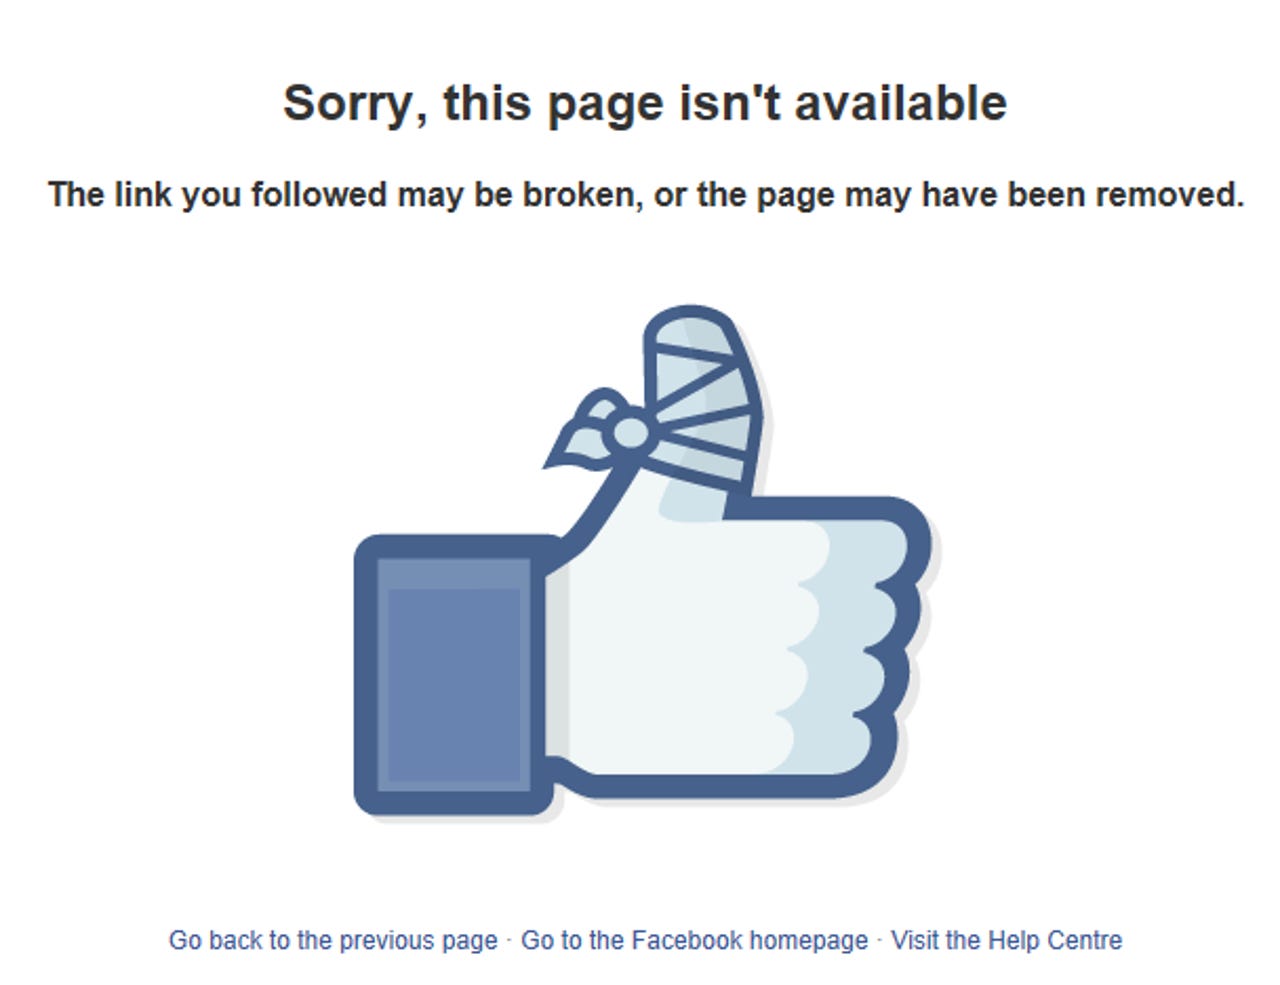 facebook-unavailable